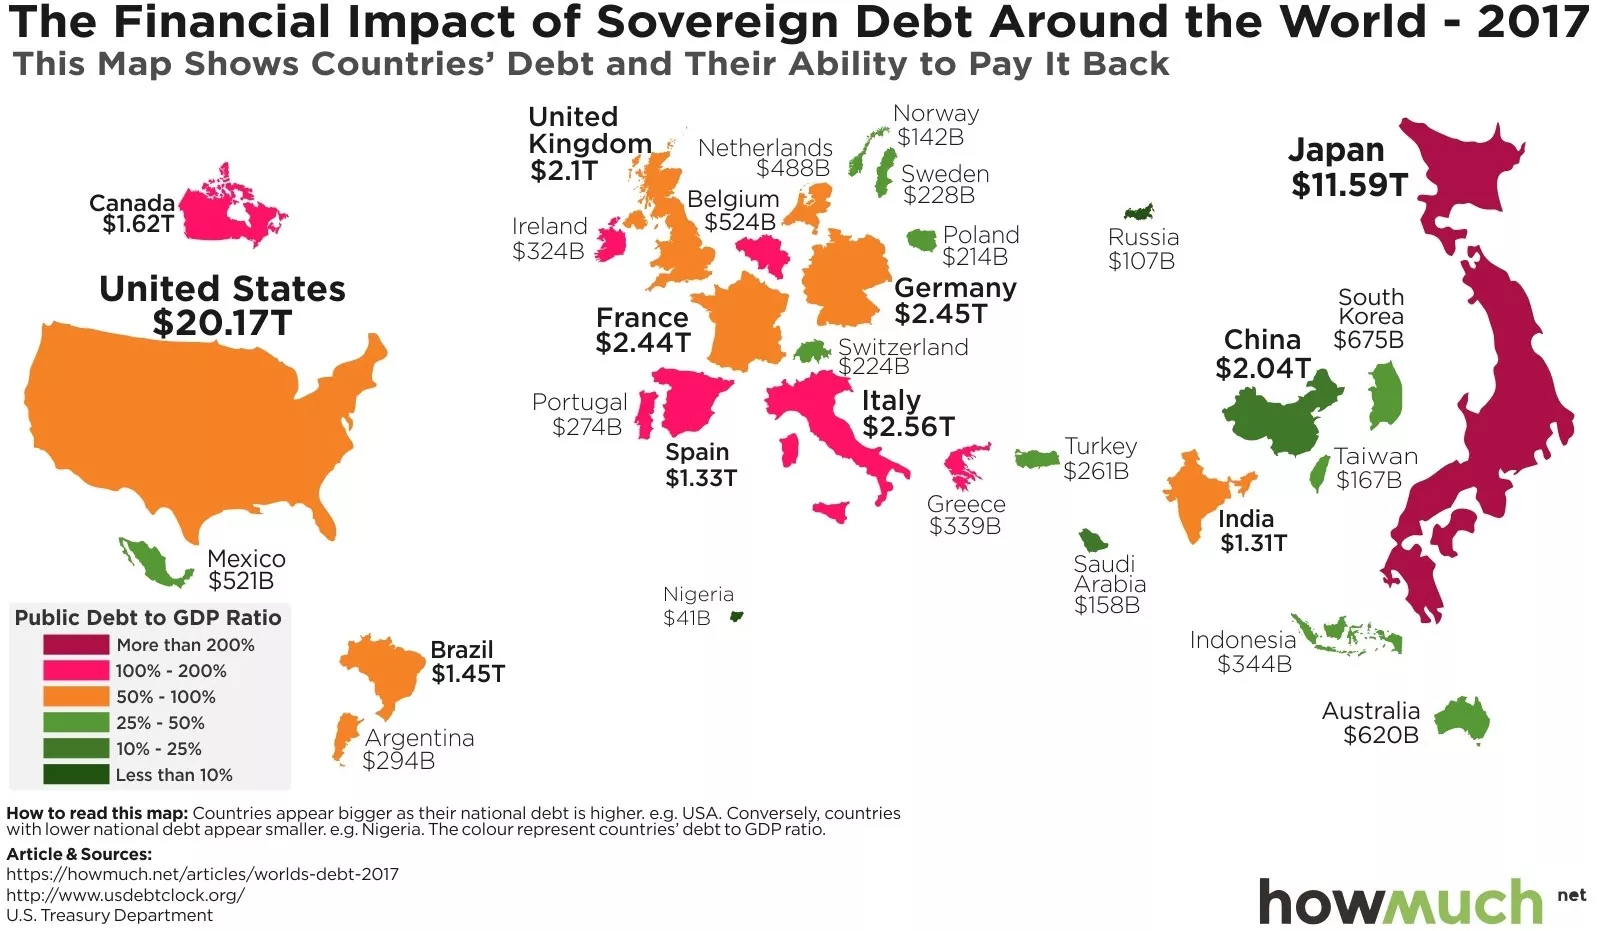 HowMuch.net网站参考美国财政部数据制作了一张图表，其中绿色代表国家债务占GDP比重较低，深红色代表国家债务占GDP比重最大，甚至超过了经济体量本身。 从上图可知，按国家债务绝对水平来说，美国和日本位列全球头两名，债务总规模分别为20.17万亿美元和11.59万亿美元。德国和巴西等国债务相对较少，分别为2.45万亿和1.45万亿美元。 来源：华尔街见闻